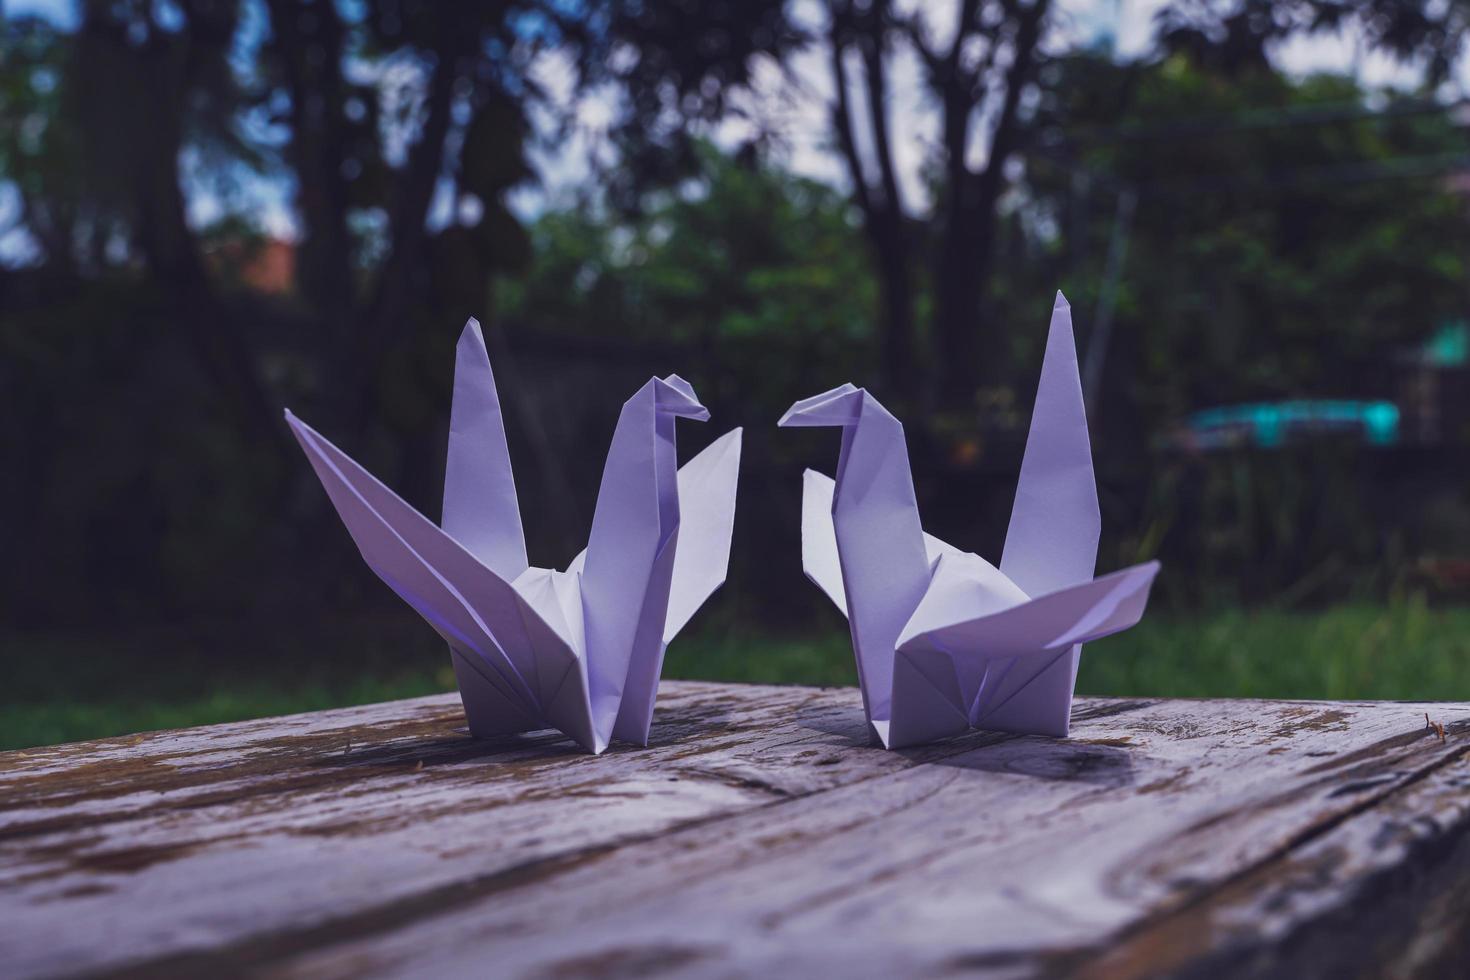 de origami vogel is geloofde naar worden een heilig vogel en een symbool van levensduur, hoop, mooi zo geluk en vrede foto